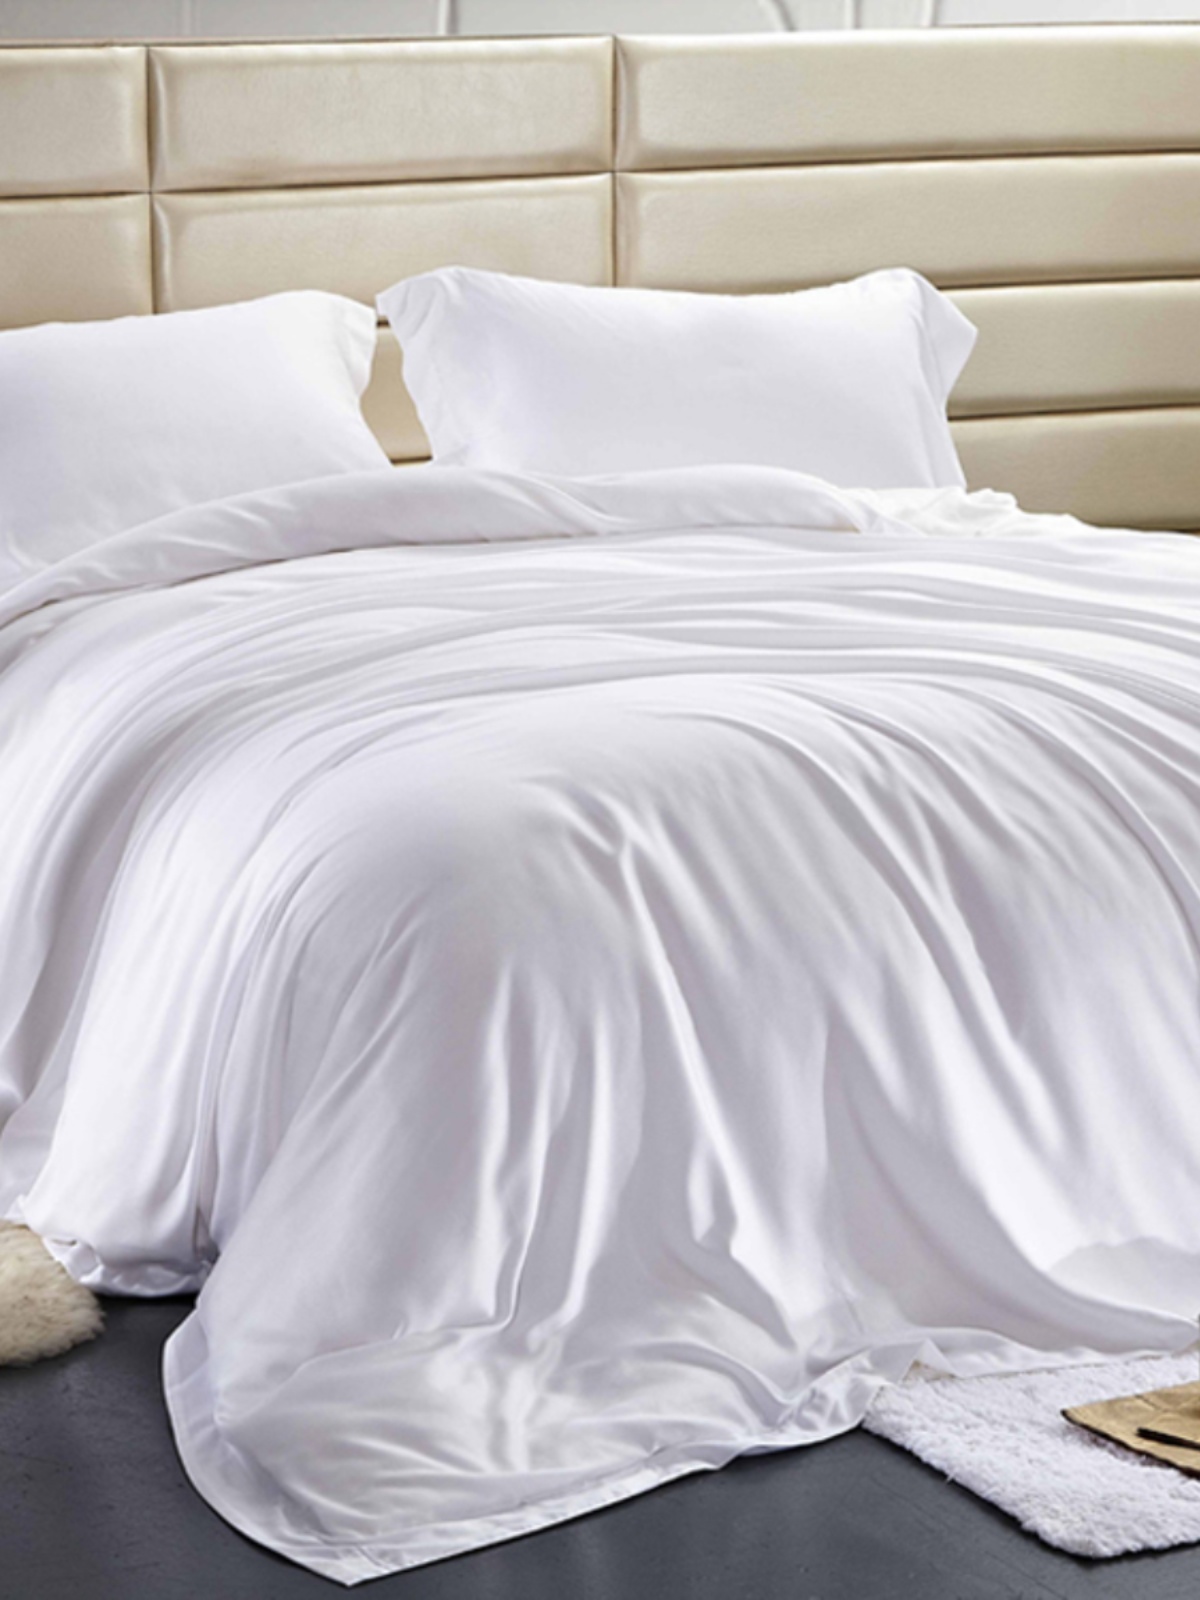 酒店新款纯色薄被条纹棉被单民宿白色单件被子套被罩床上用品被套